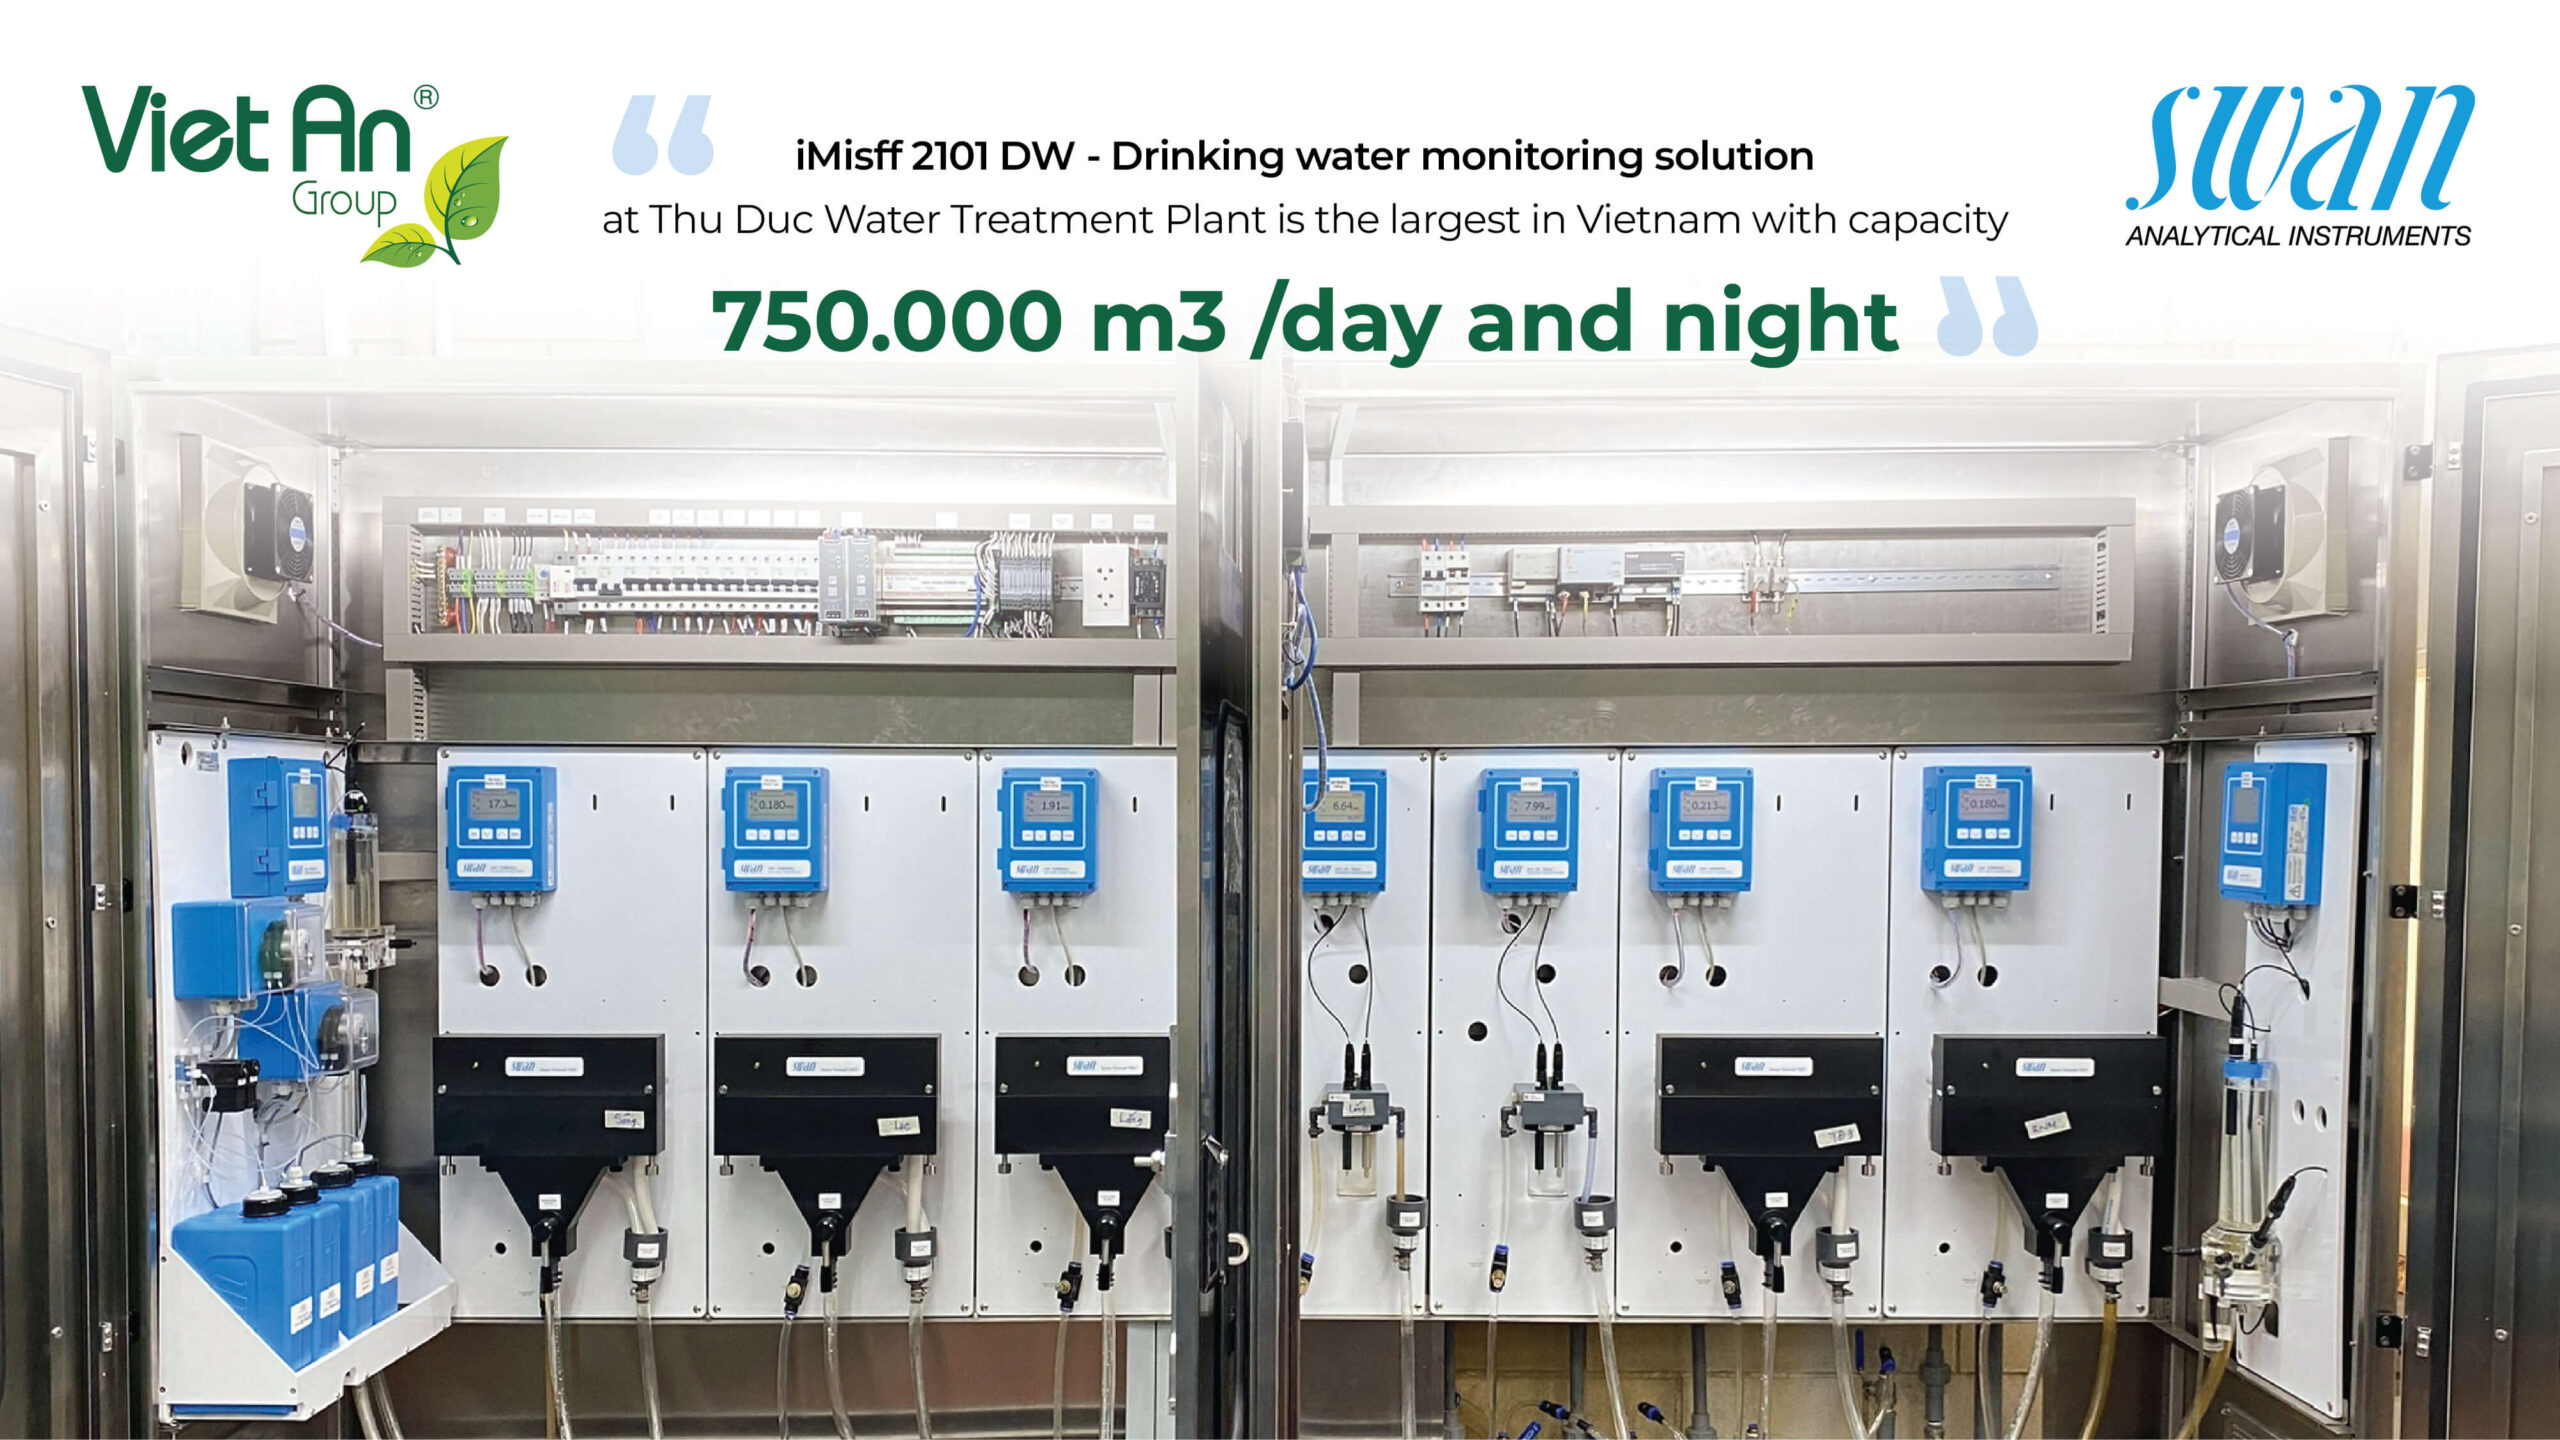 Nhà máy cấp nước Thủ Đức ứng dụng hệ thống giám sát nước sạch thông minh iMisff 2101